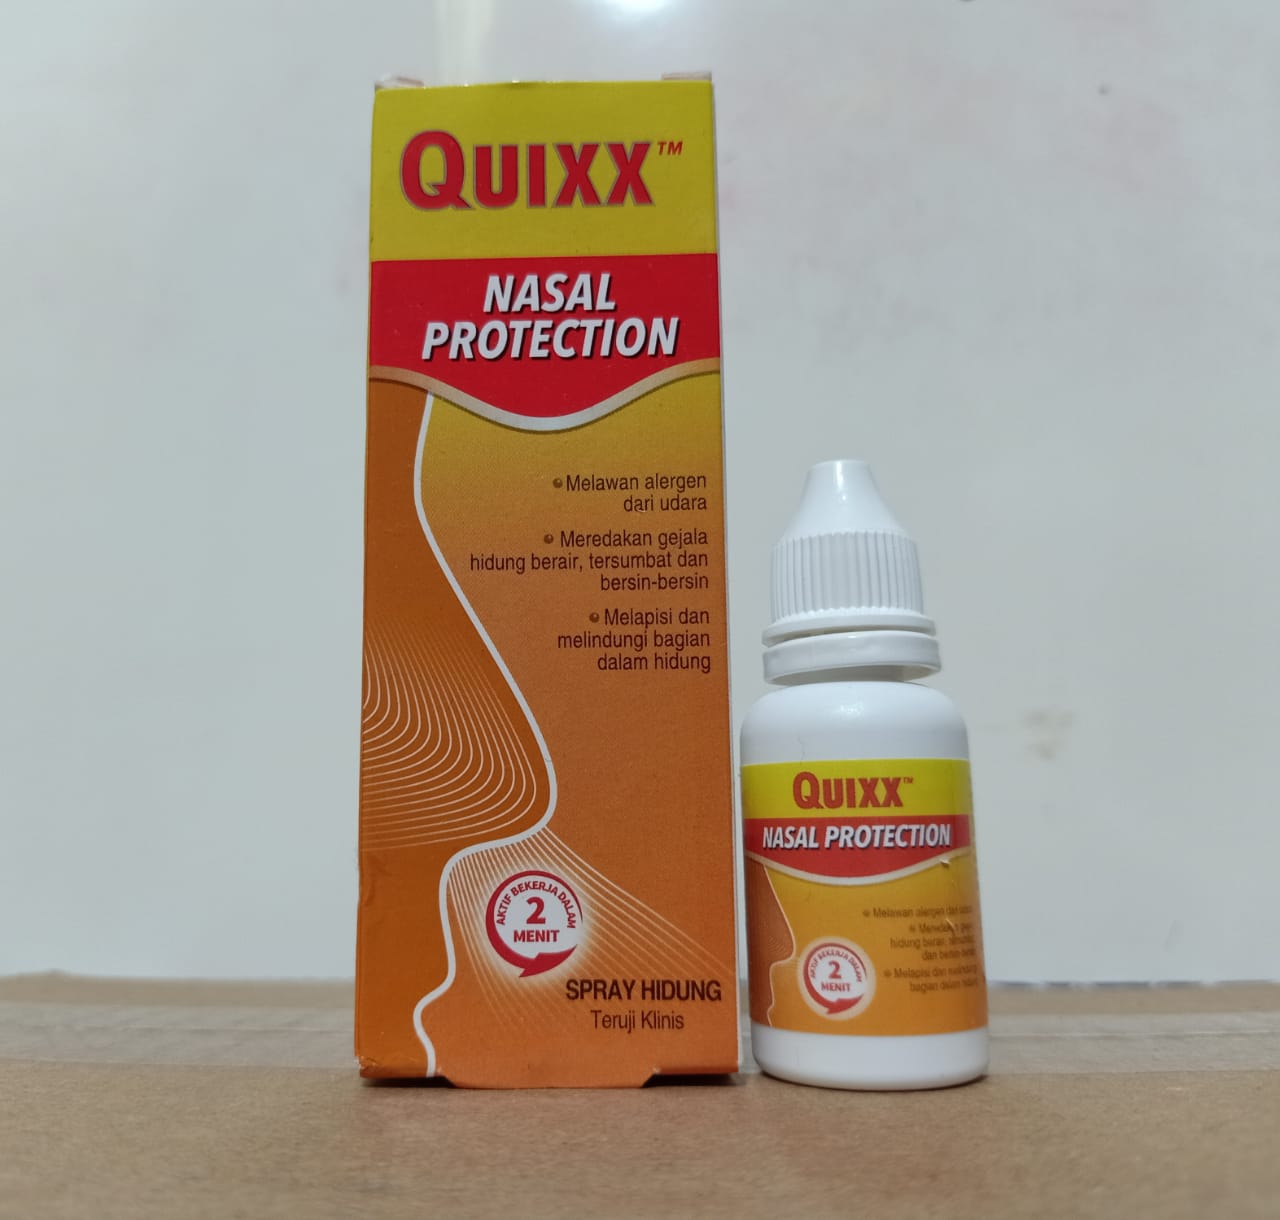 Quixx nasal protection